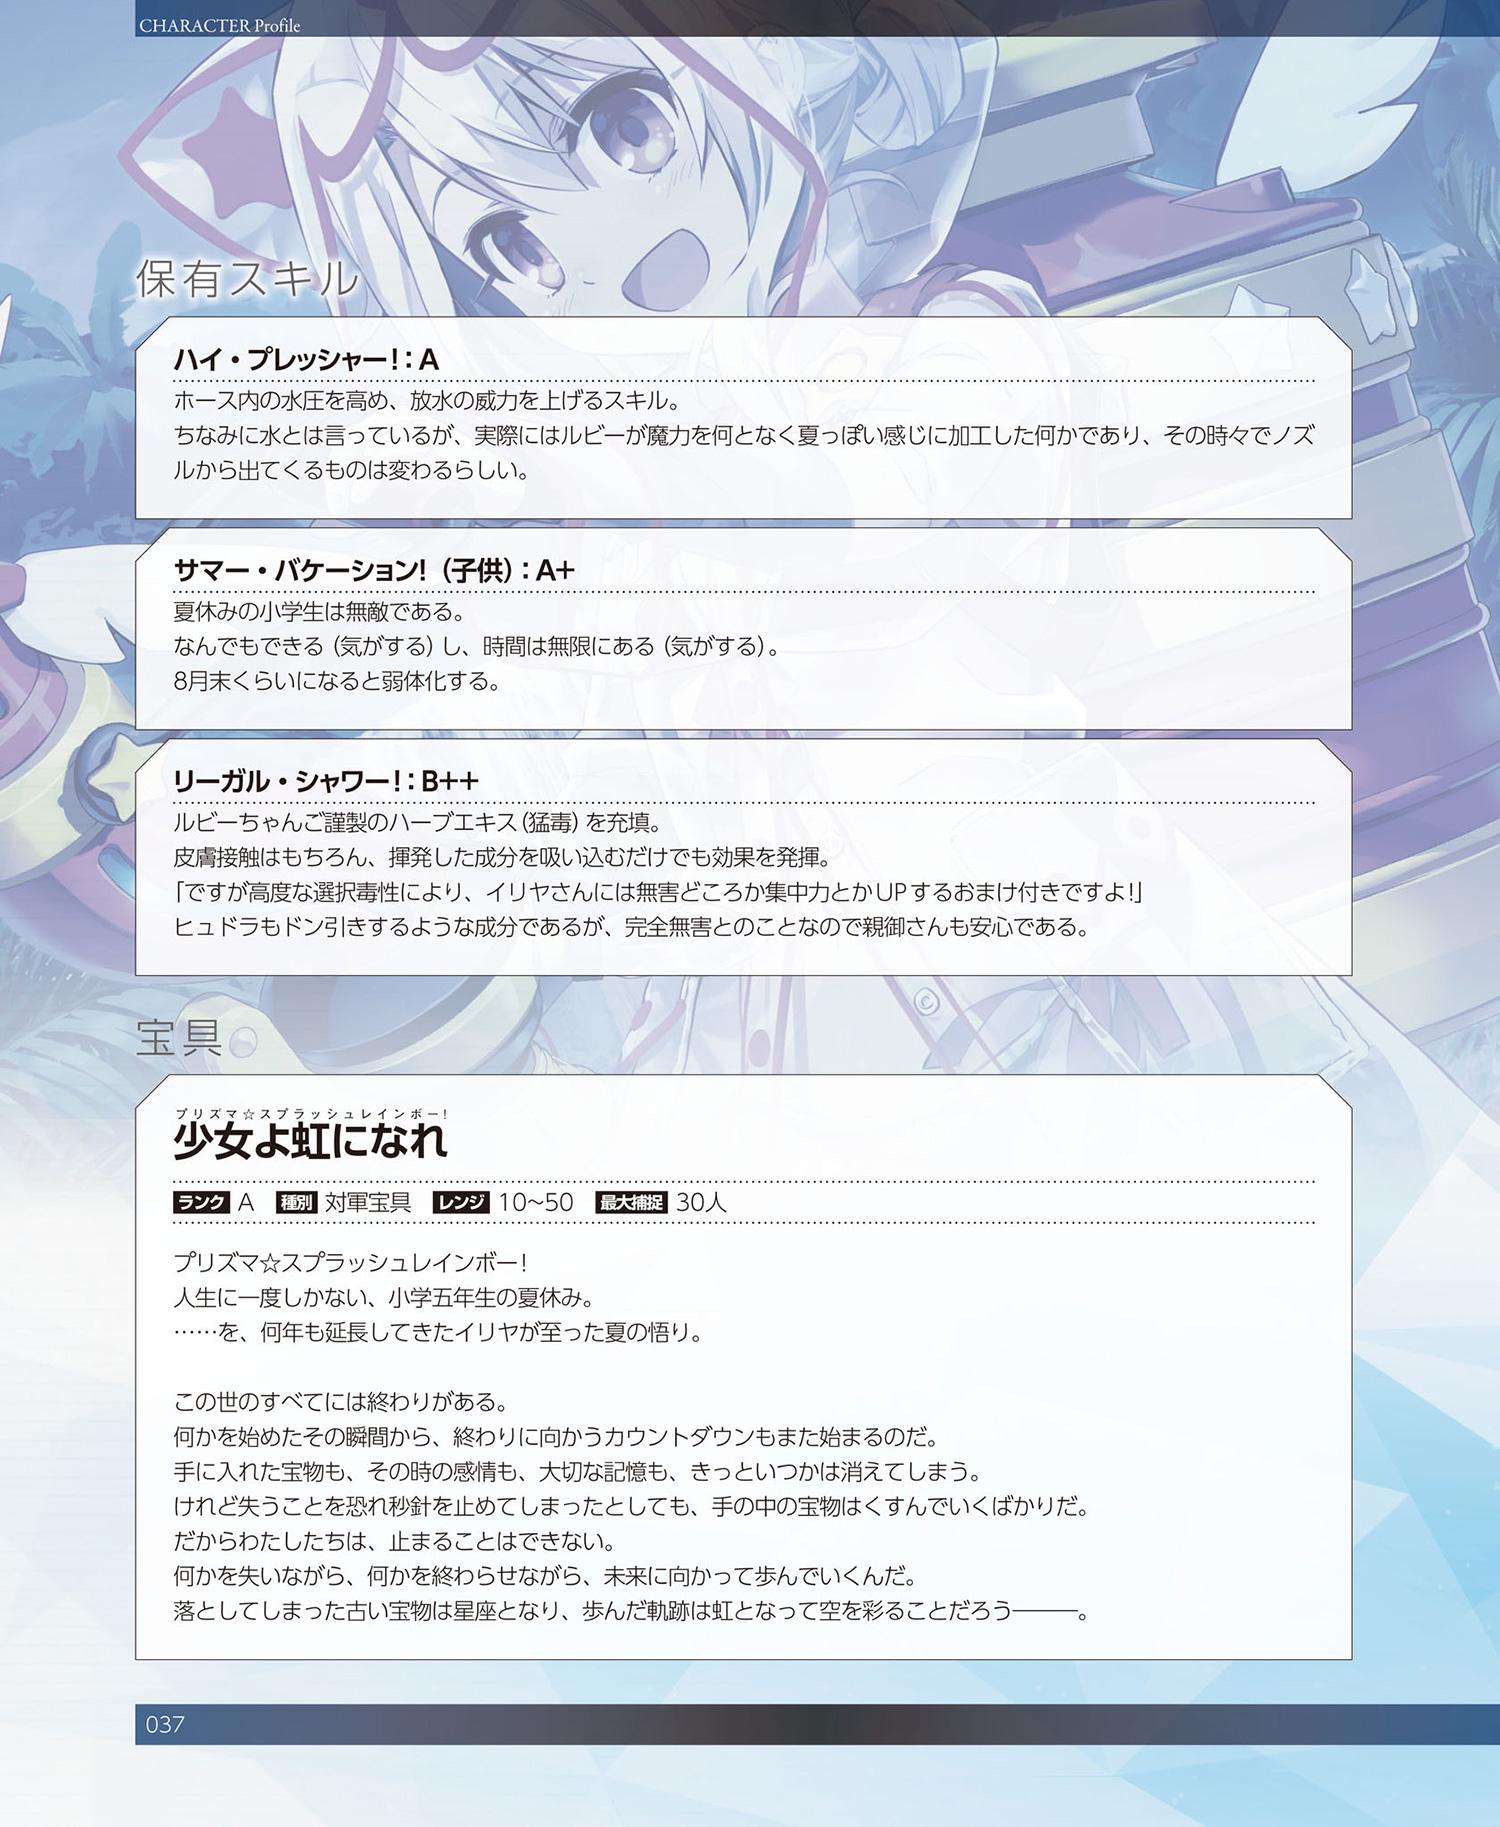 11巻-1]Fate/Grand Order material【試し読み】 - TYPE-MOON｜TYPE 